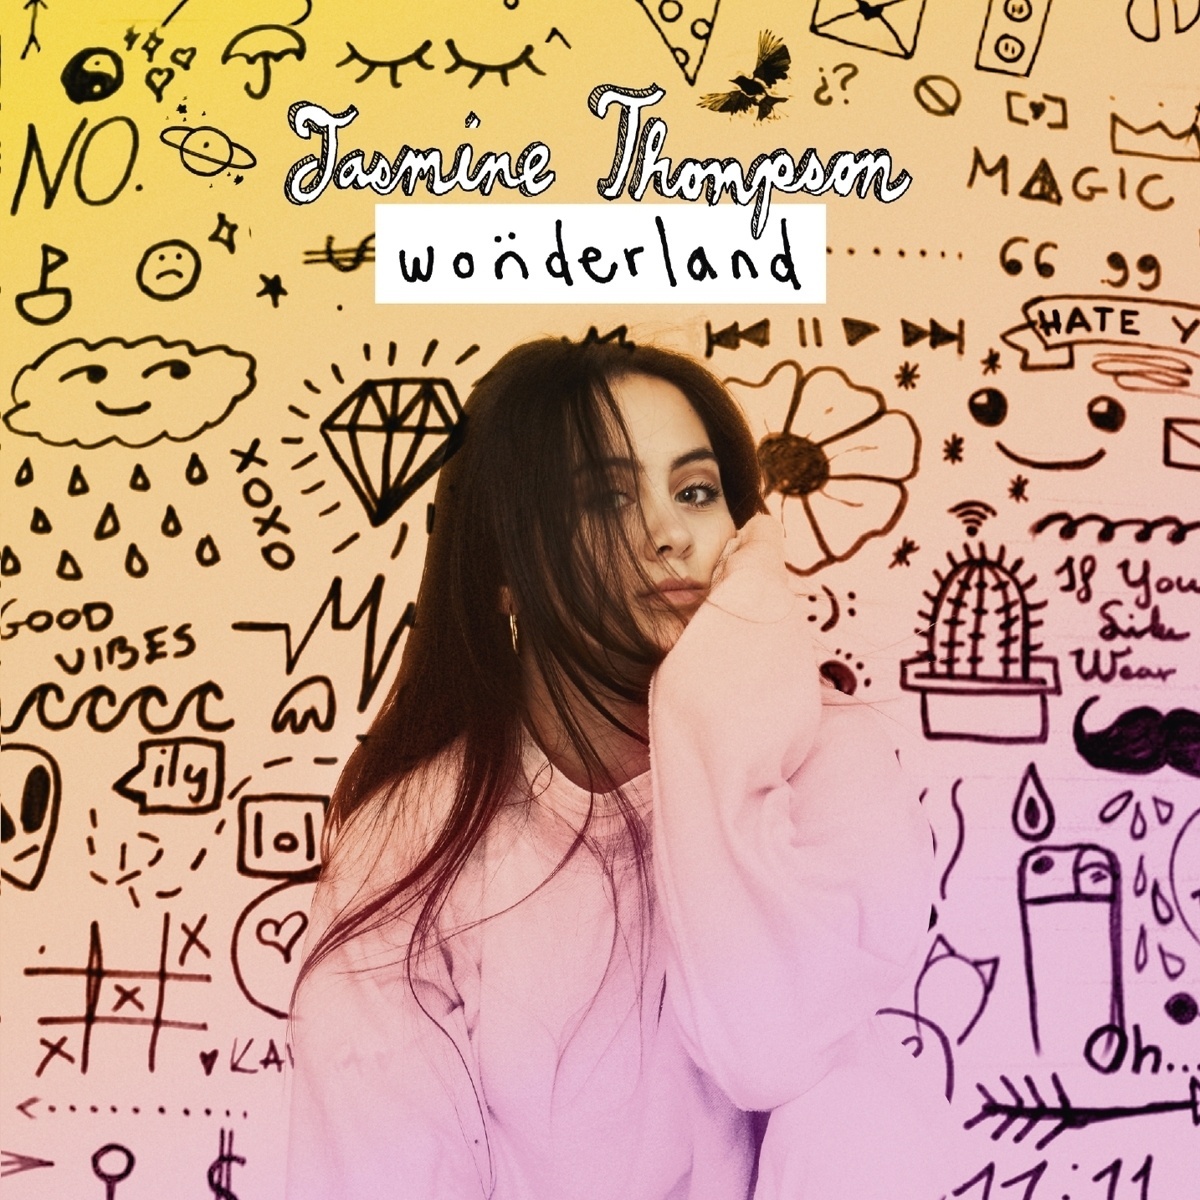 Wonderland - Jasmine Thompson. (CD)